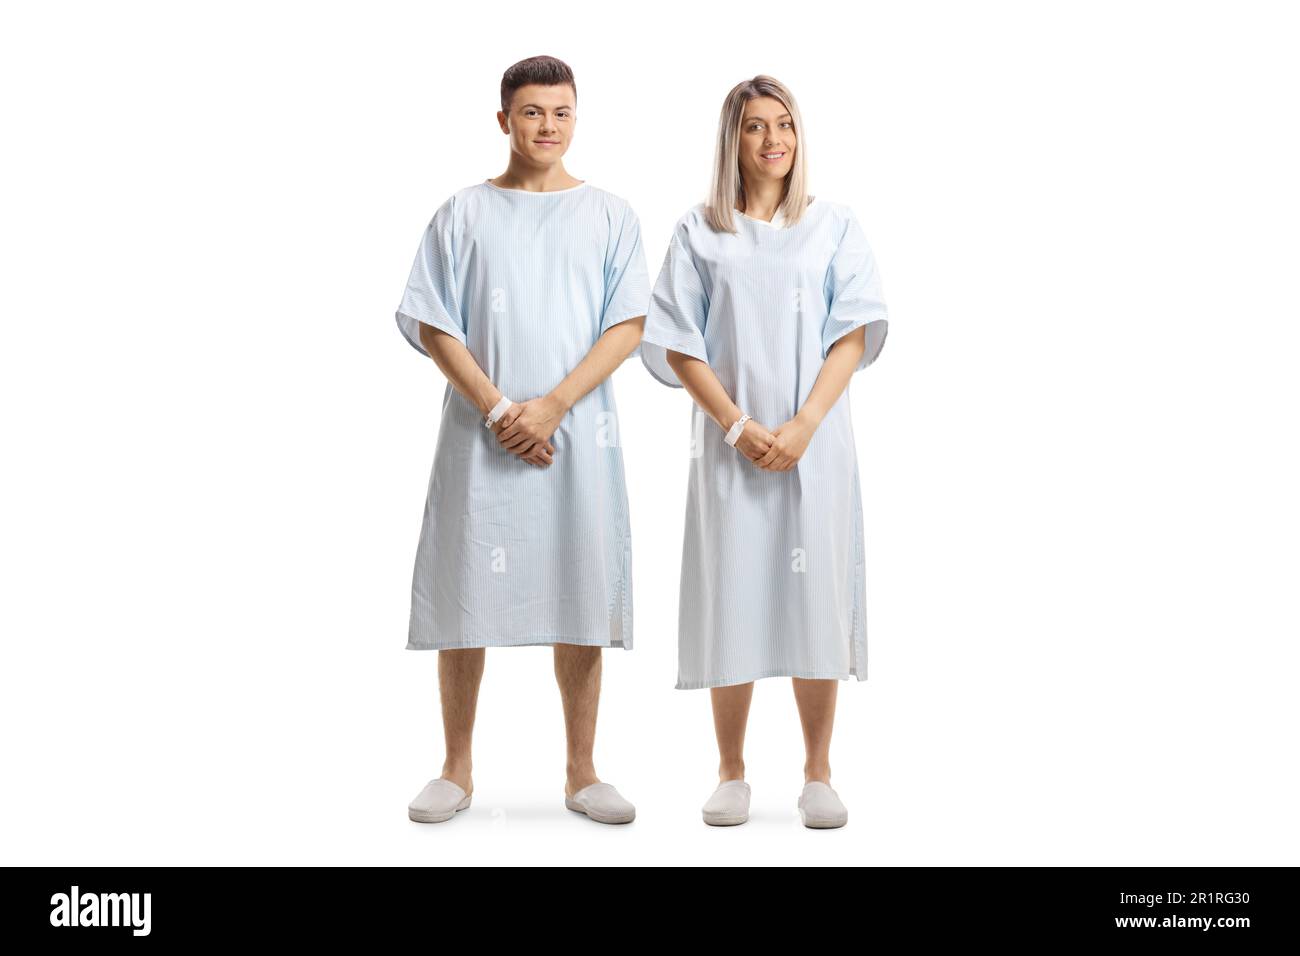 Portrait complet d'un jeune homme et d'une jeune femme dans des robes d'hôpital isolées sur fond blanc Banque D'Images